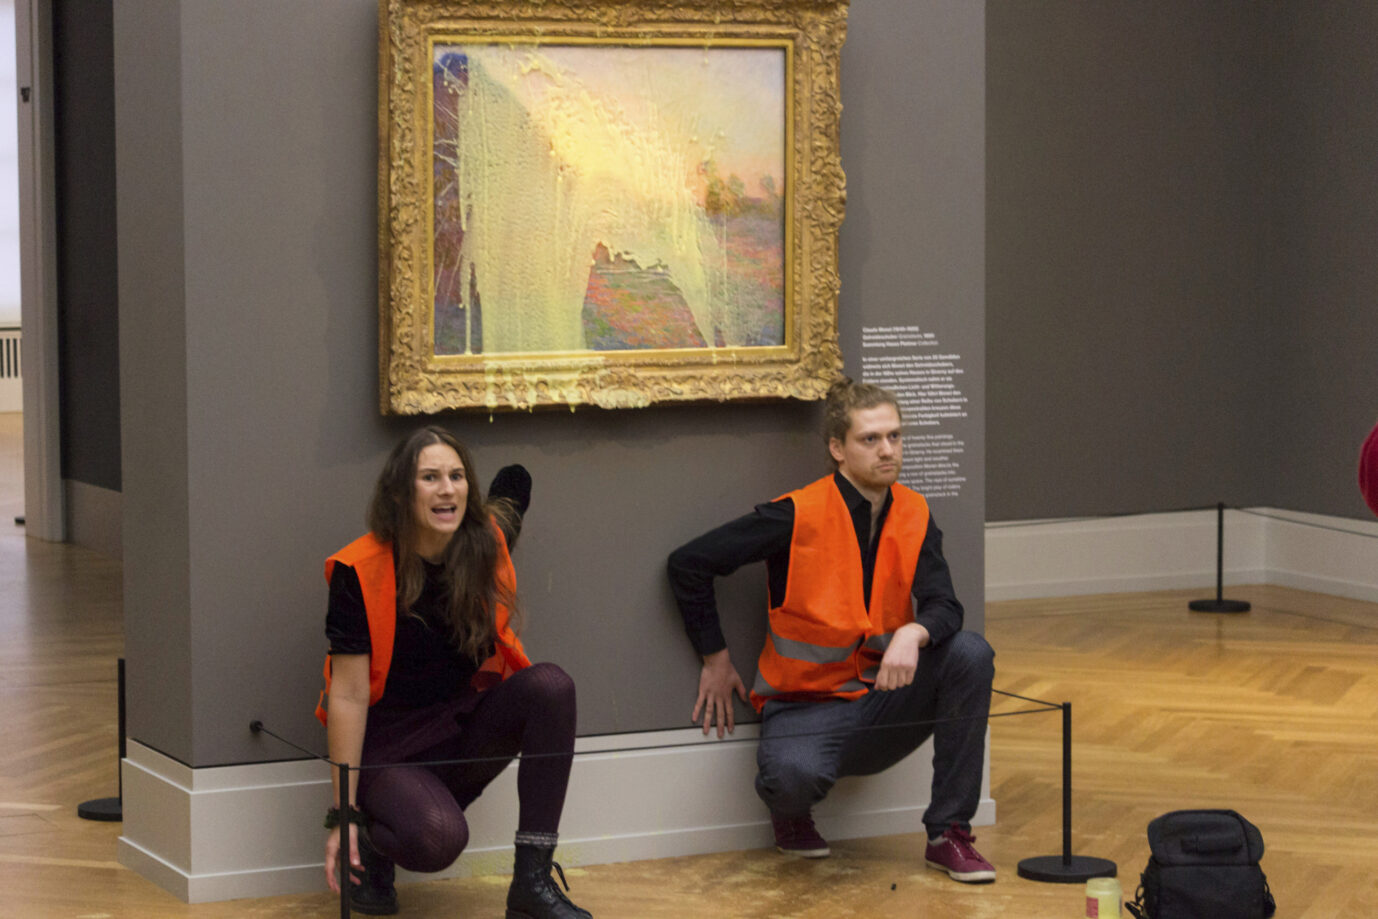 Klima-Extremisten der "Letzten Generation" vor dem beschädigten Monet-Bild in Potsdam. Die Museen prüfen nun Schadenersatzforderungen.